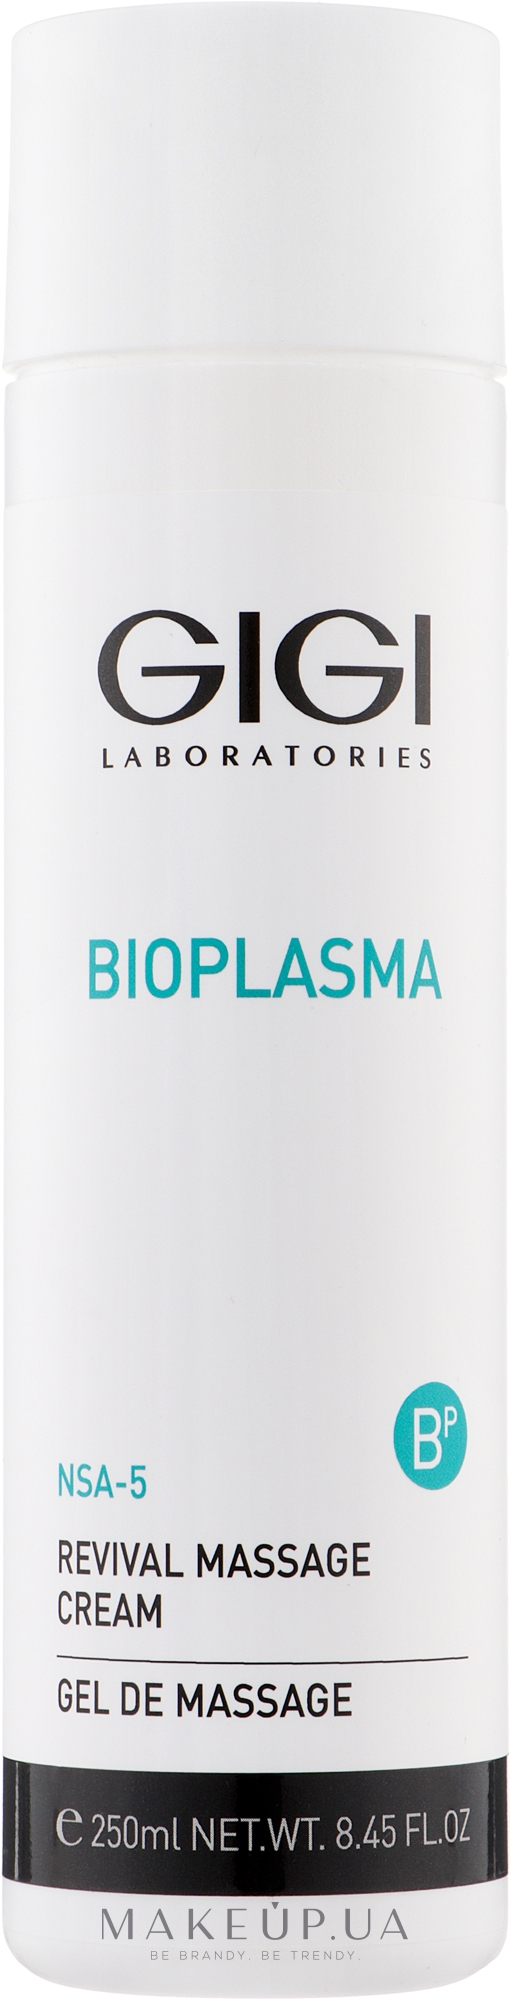 Массажный крем - Gigi Bioplasma NSA-5 Revival Massage Cream — фото 250ml